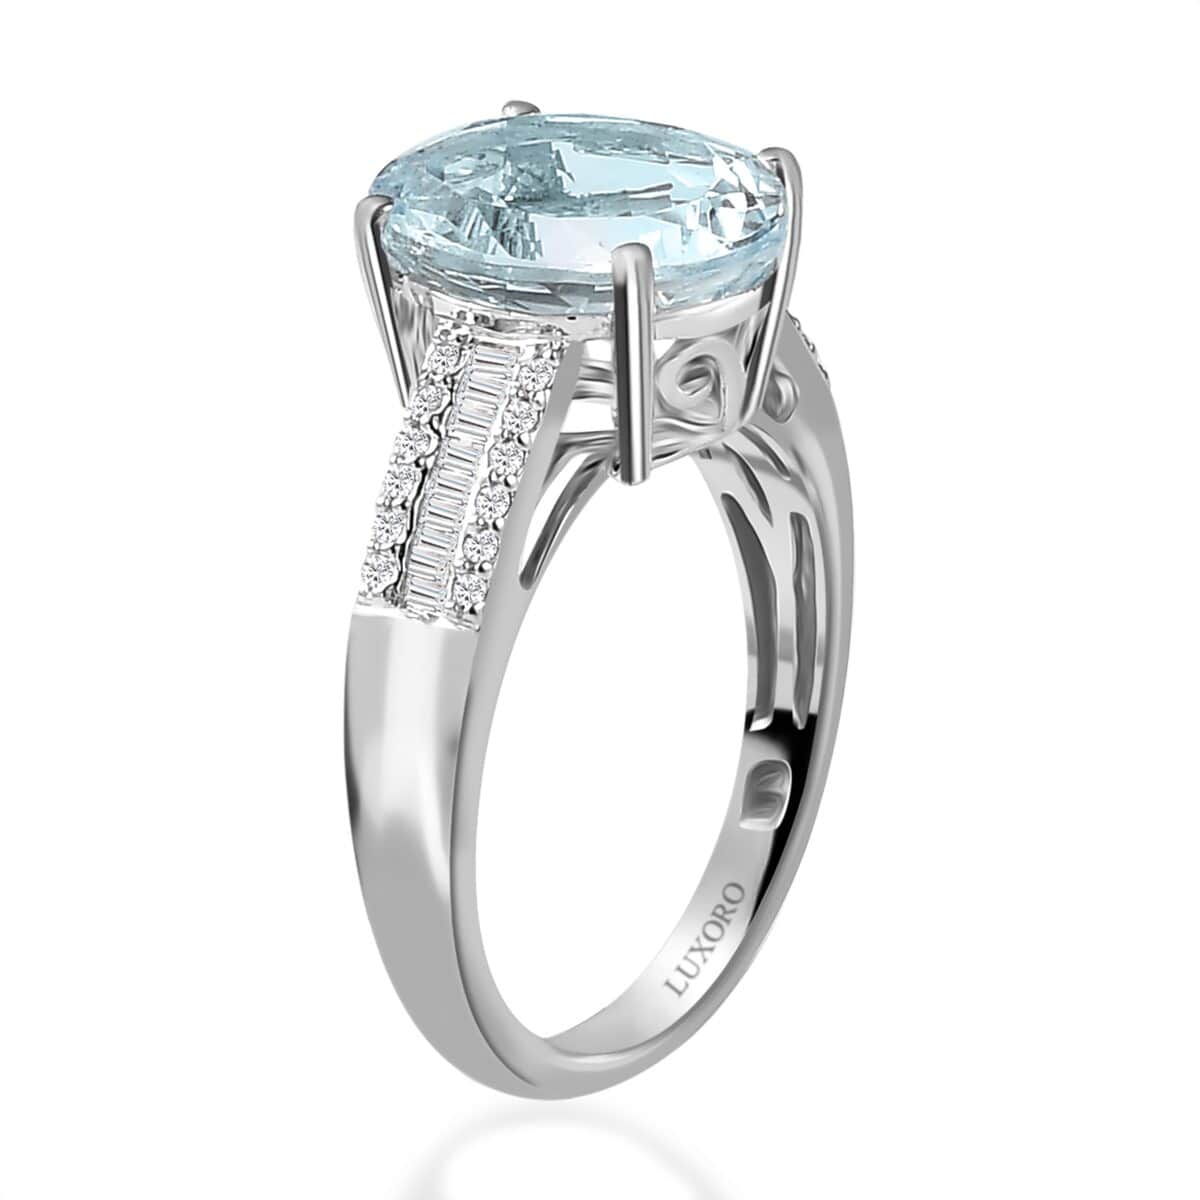 Luxoro 10K White Gold Premium Mangoro Aquamarine and Diamond Ring (Size 10.0) 3.40 ctw image number 3